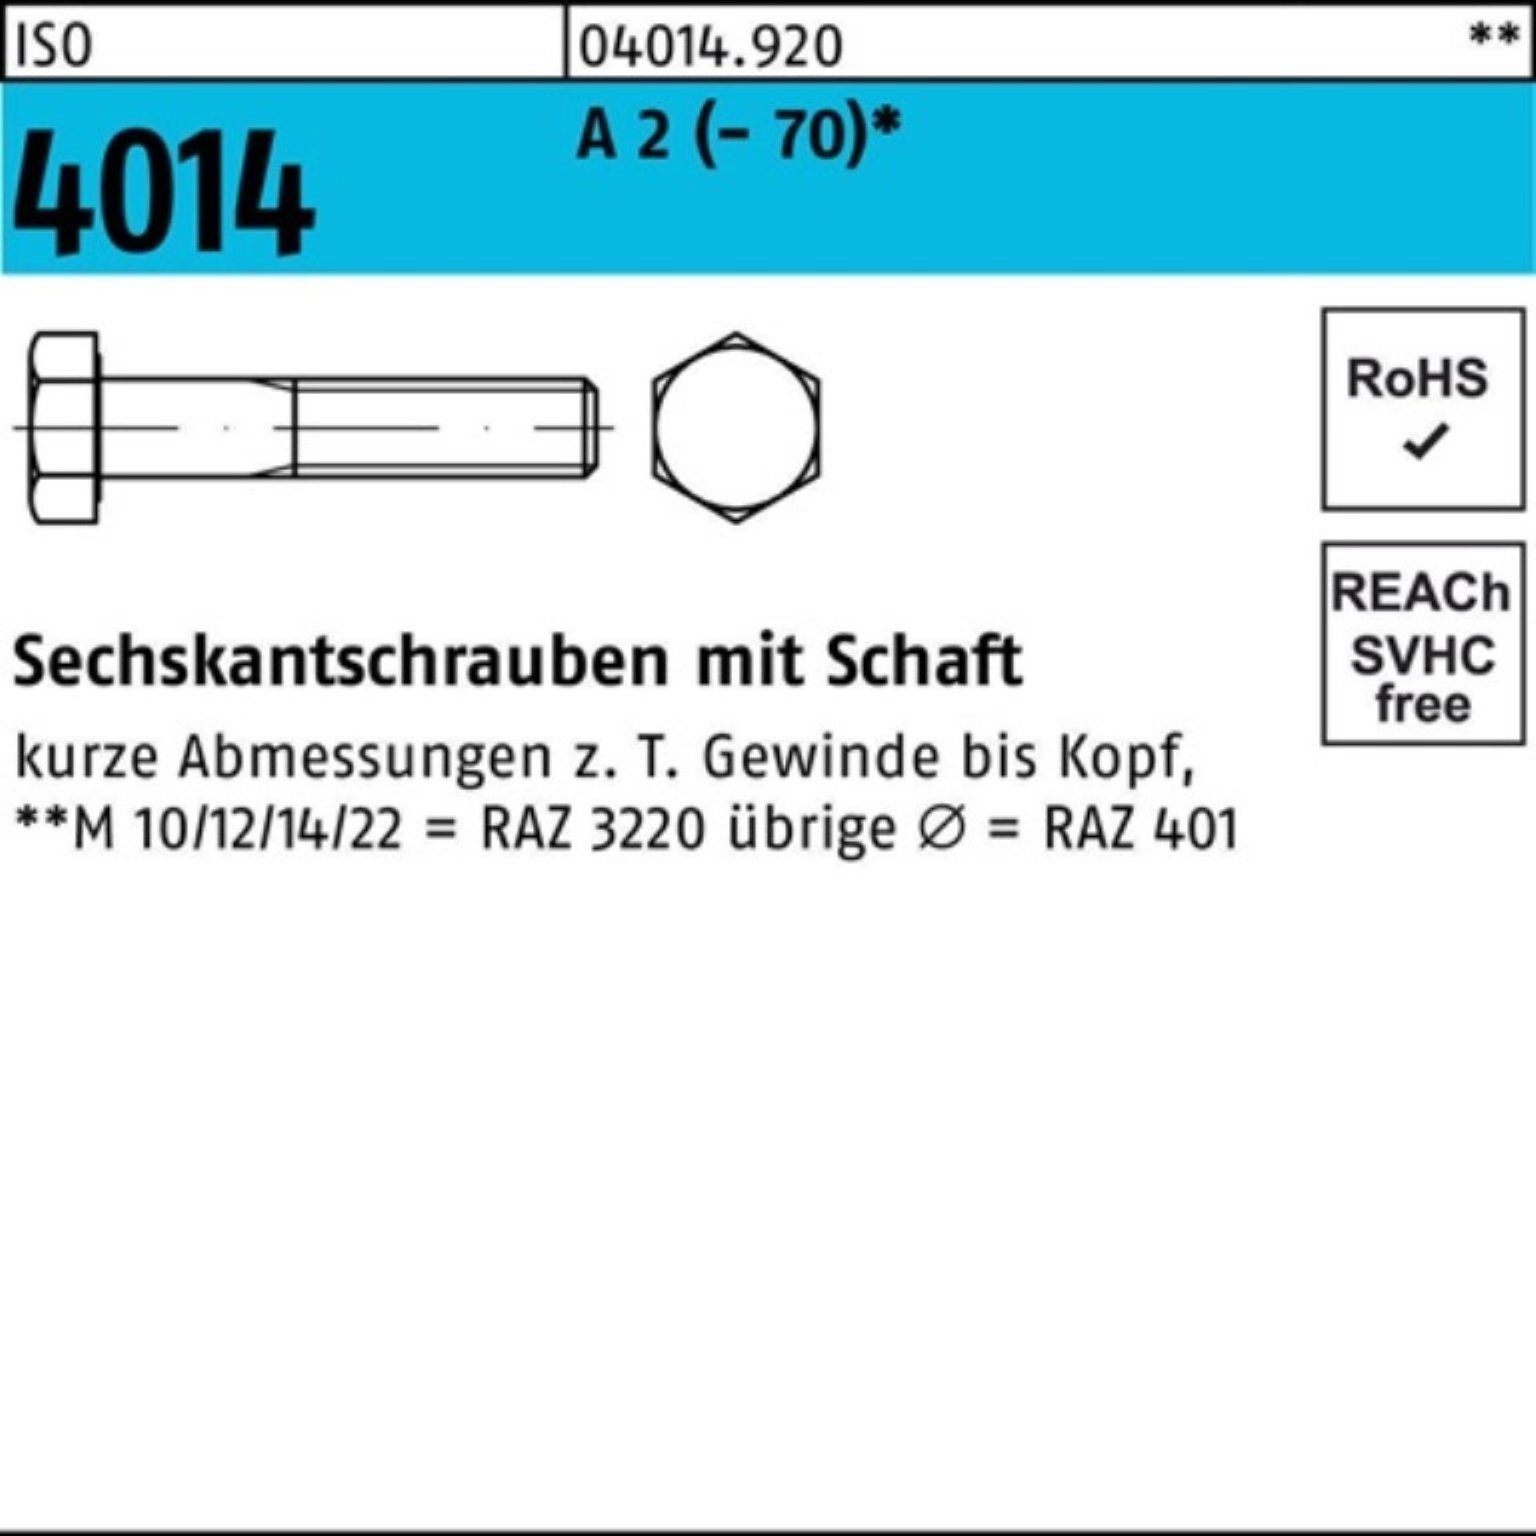 Bufab 70 ISO Sechskantschraube Pack Sechskantschraube Schaft 4014 St 100er (70) M8x A 2 100